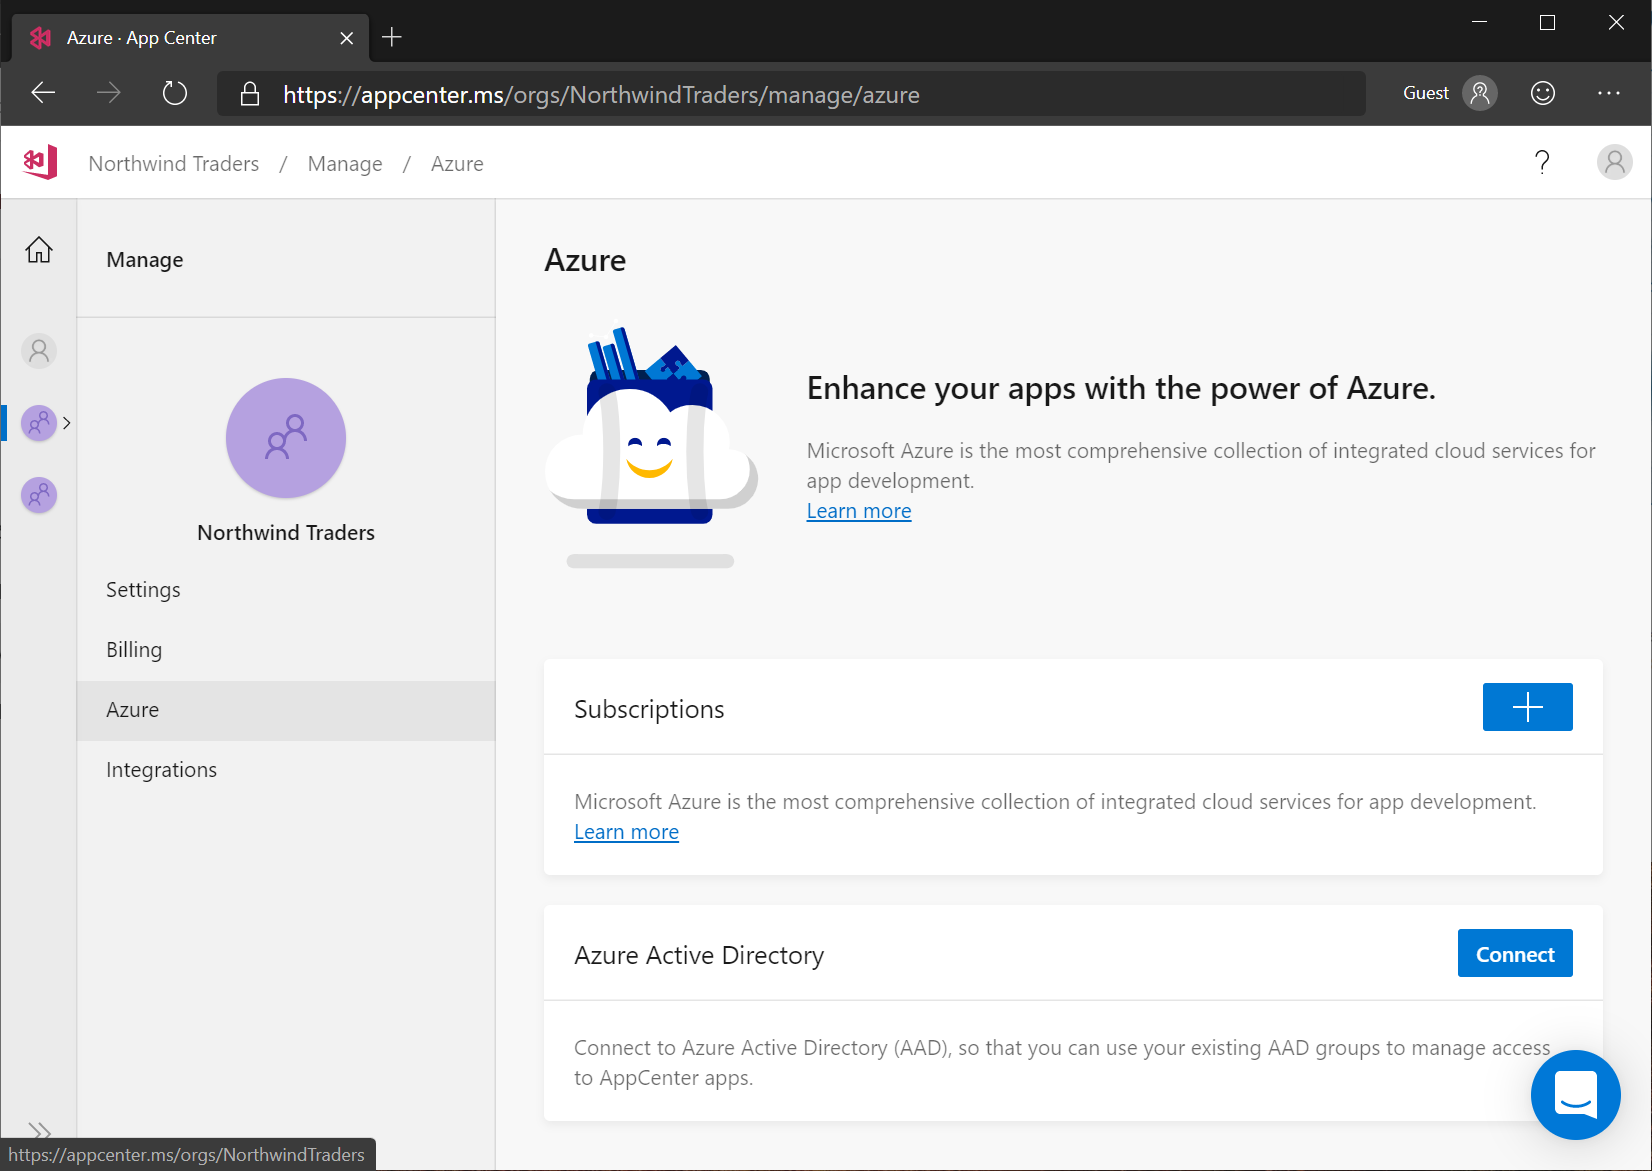 Pusat Aplikasi: Mengelola koneksi organisasi Anda ke Azure